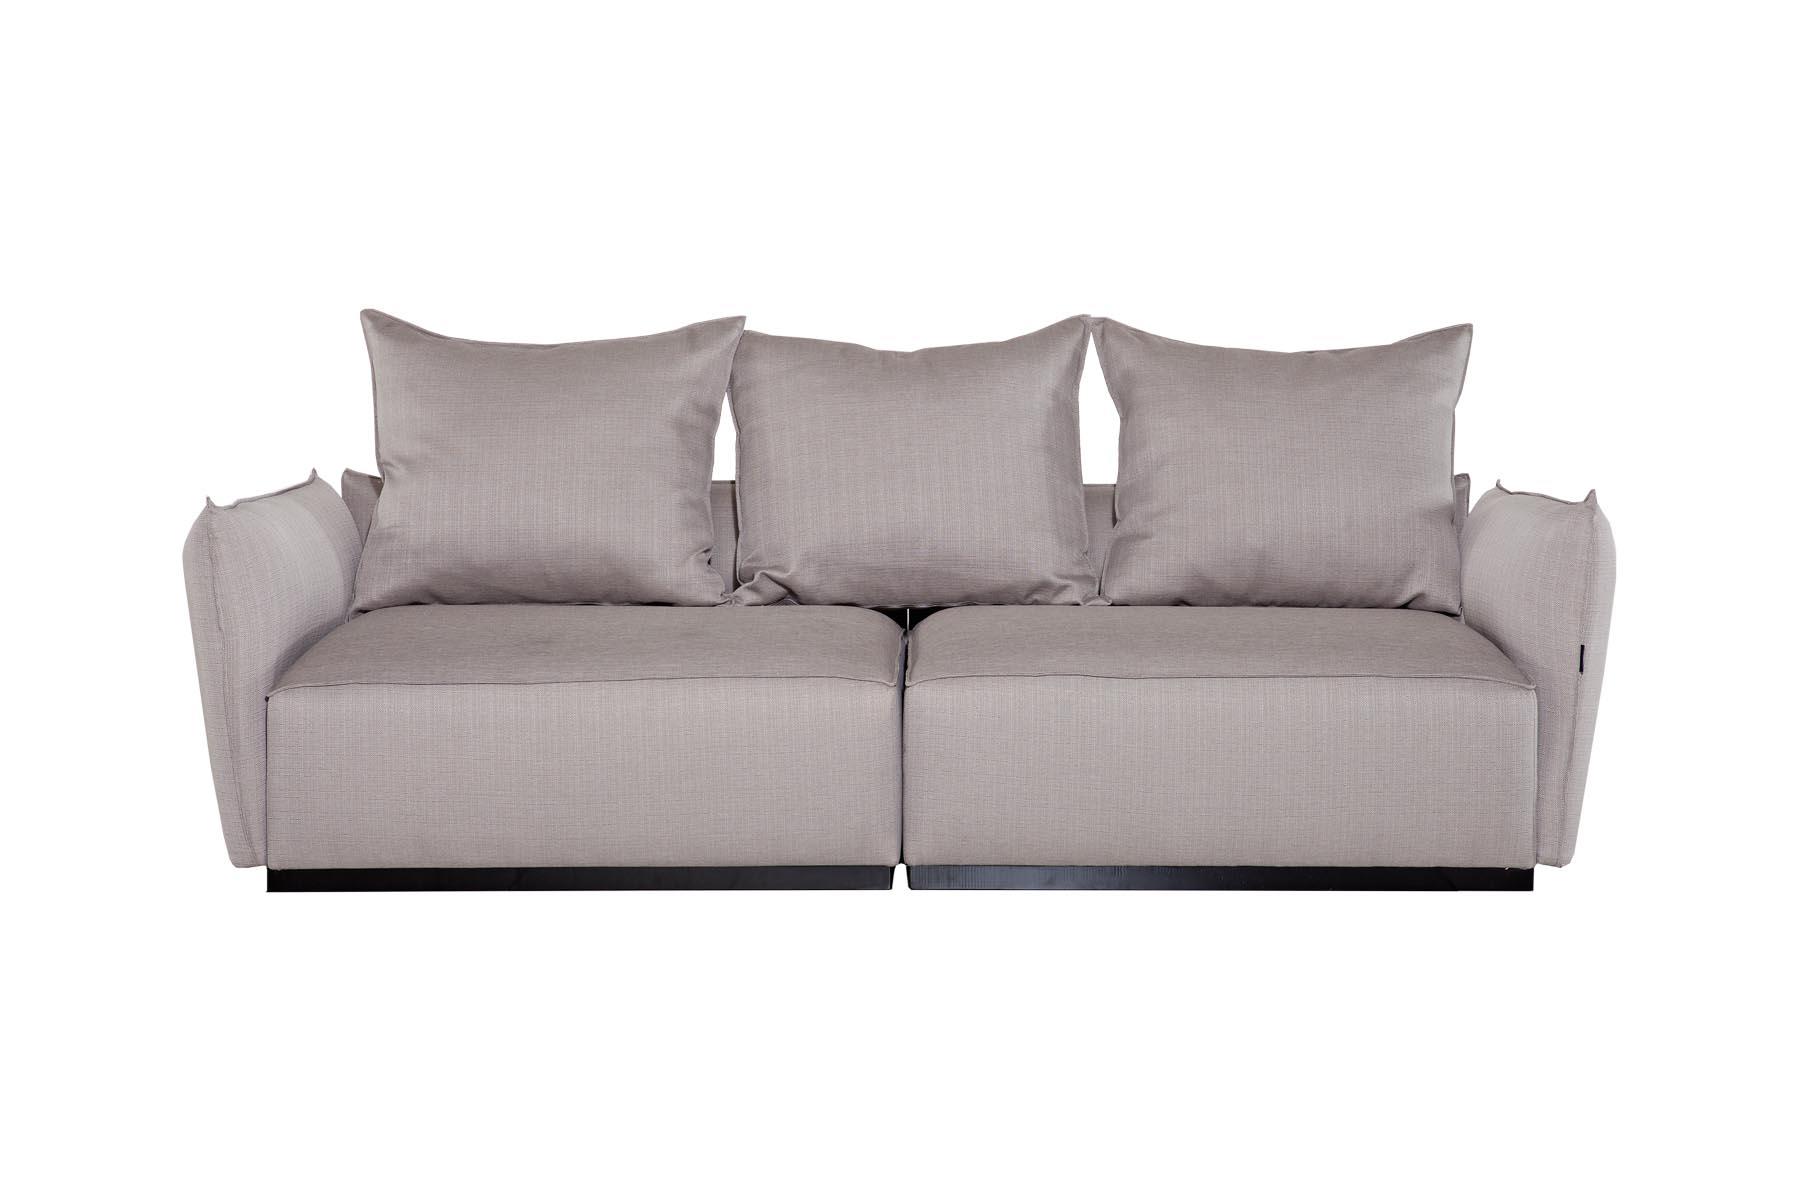 Izuzetno udobna sofa, specifičnog izgleda. Preporučujemo je ljubiteljima retro stila.